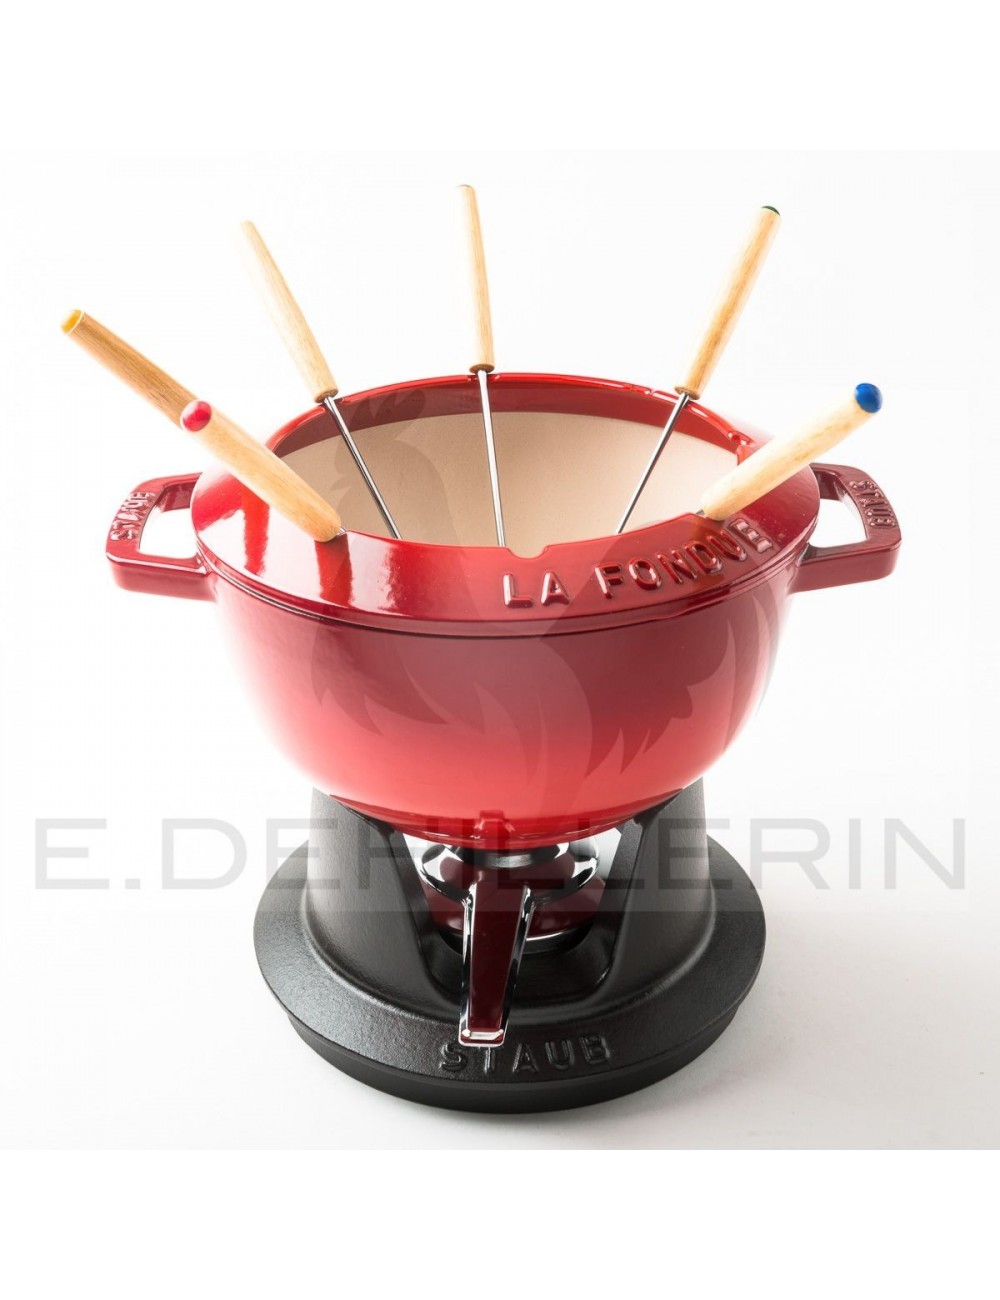 https://www.edehillerin.fr/824-large_default/service-a-fondue-red-diameter-20-staub.jpg